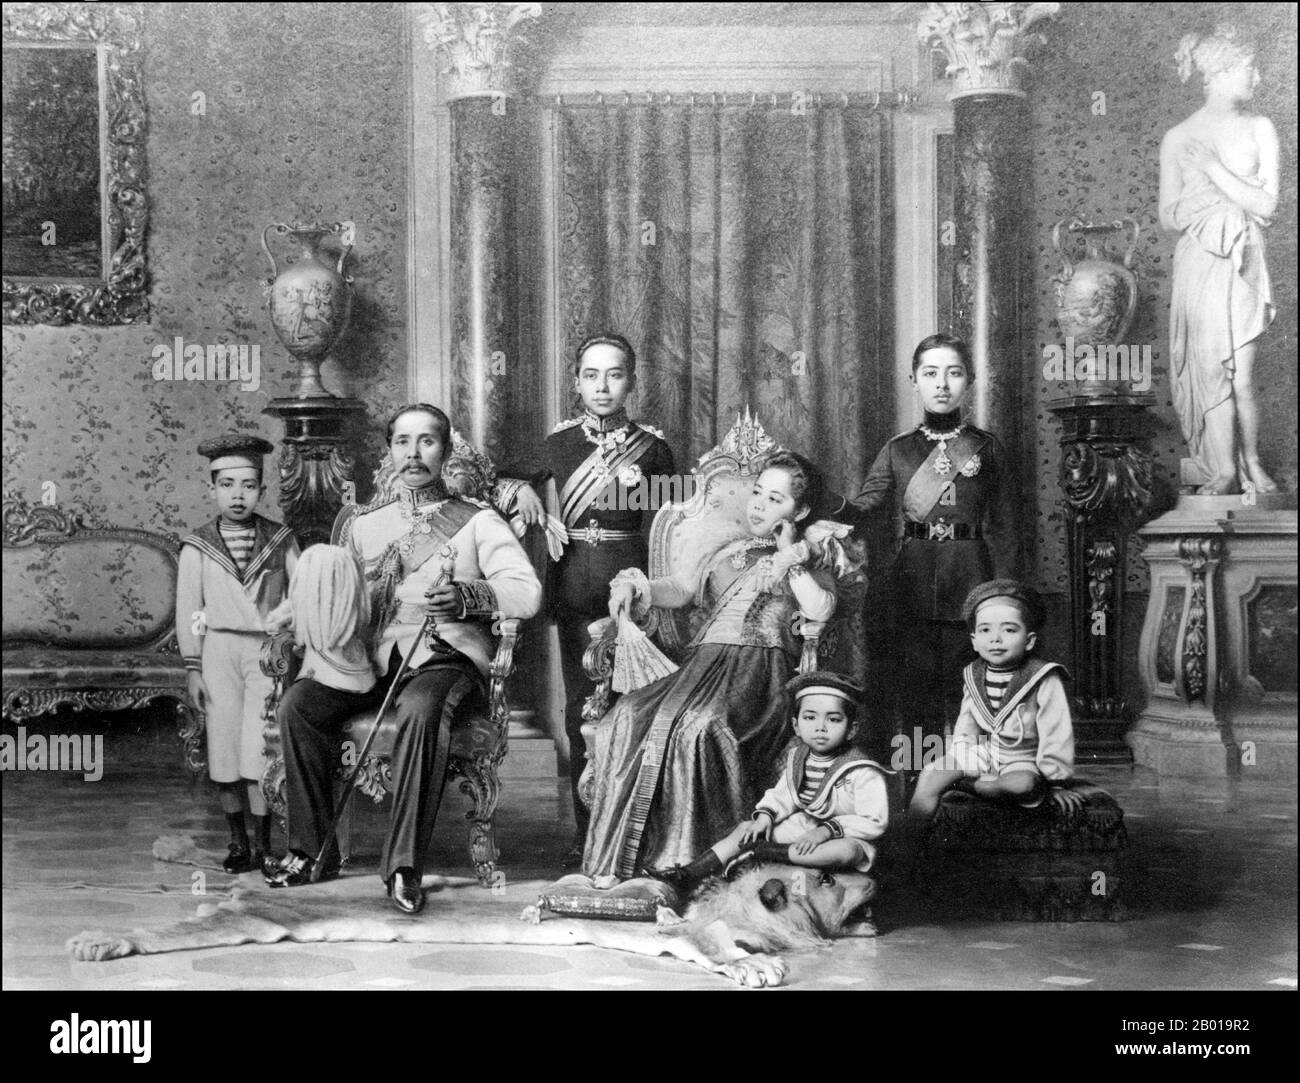 Tailandia: El rey Chulalongkorn (20 de septiembre de 1853 – 23 de octubre de 1910) de Siam con la reina Saowabha y los hijos reales, c. 1890. Phra Bat Somdet Phra Poramintharamaha Chulalongkorn Phra Chunla Chom Klao Chao Yu Hua, o Rama V, fue el quinto monarca de Siam bajo la Casa de Chakri. Es considerado uno de los reyes más grandes de Siam. Su reinado se caracterizó por la modernización de Siam, el gobierno inmenso y las reformas sociales, y las cesiones territoriales al Imperio Británico y a la Indochina francesa. Él es visto aquí con la reina Saowabha (1864-1919), que le dio nueve hijos, incluyendo dos reyes. Foto de stock